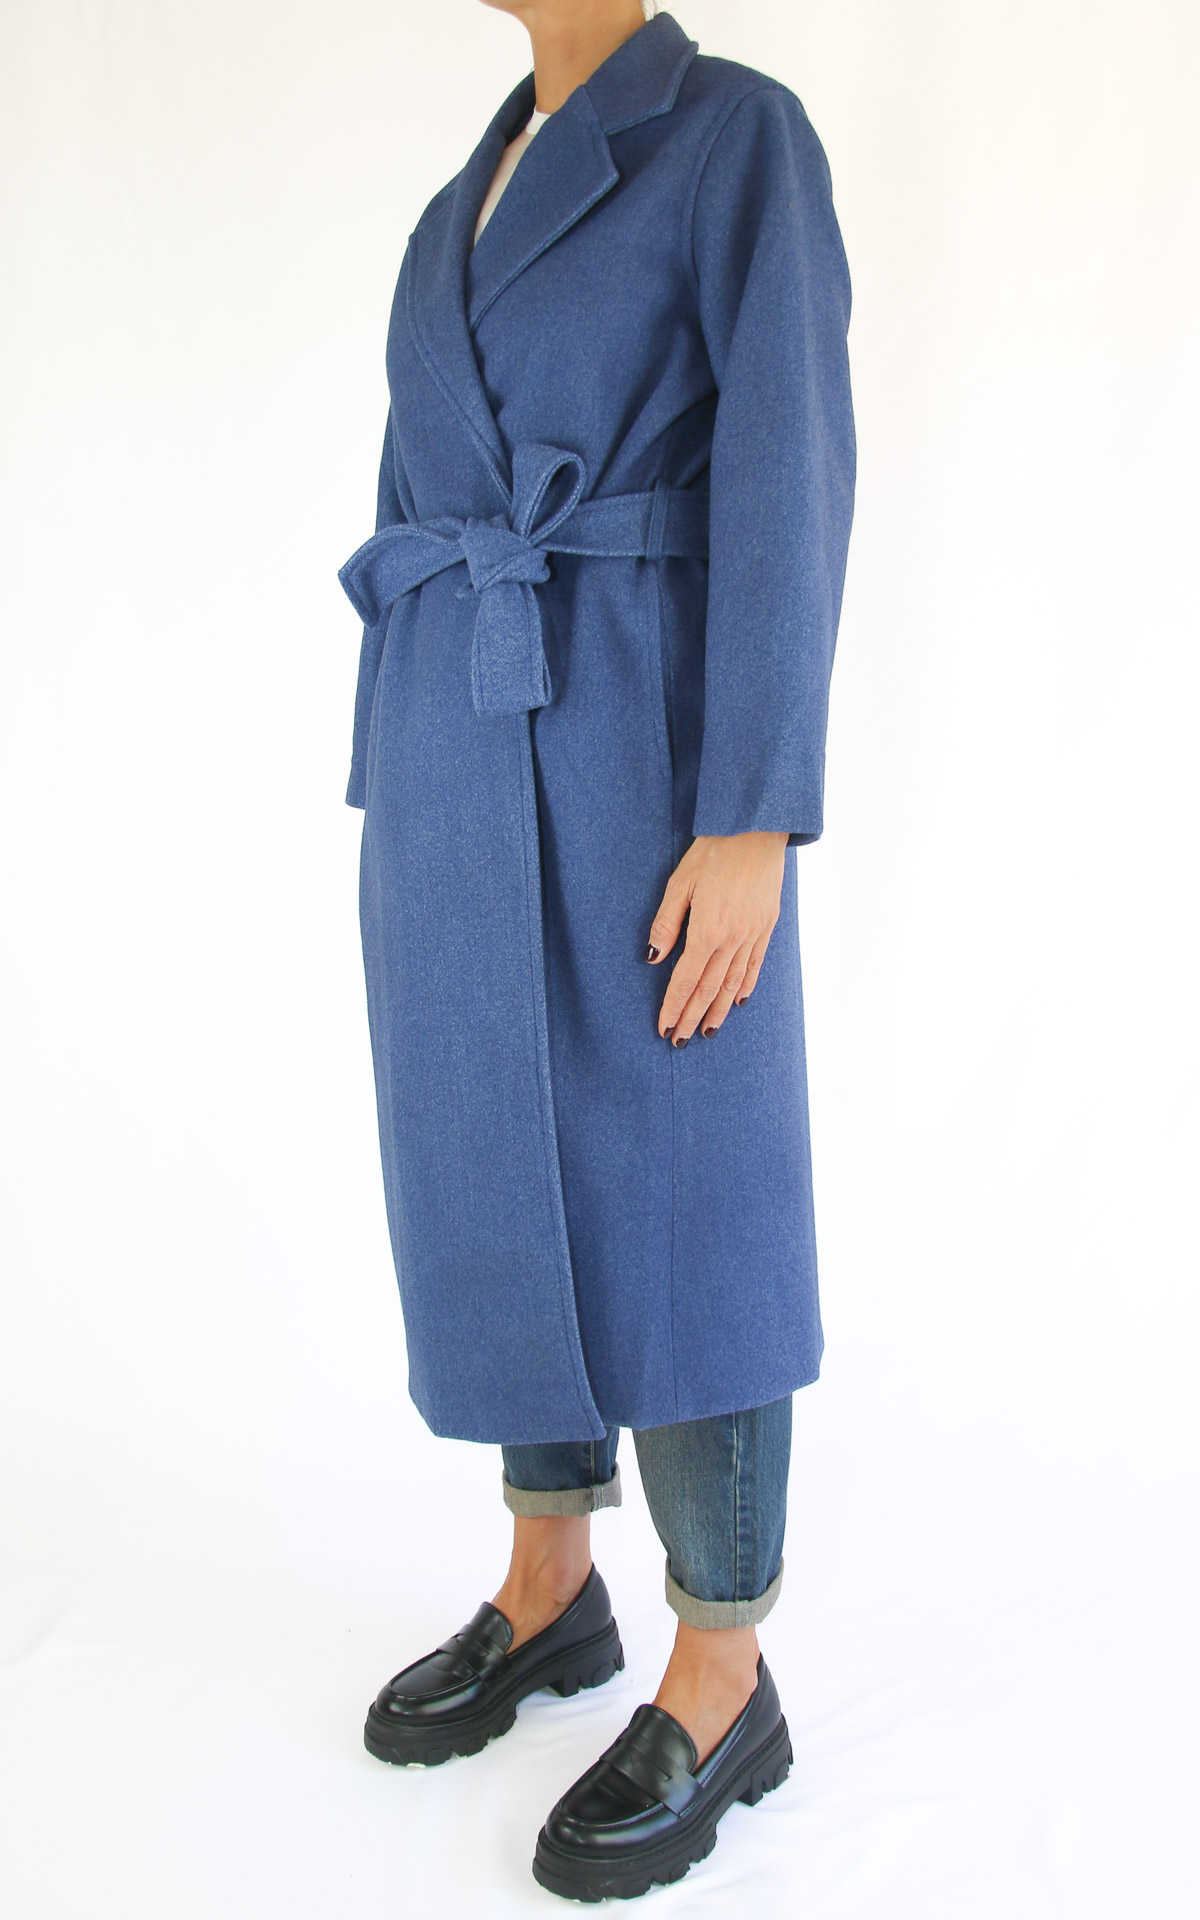 Compania Fantastica - cappotto con cintura - blu